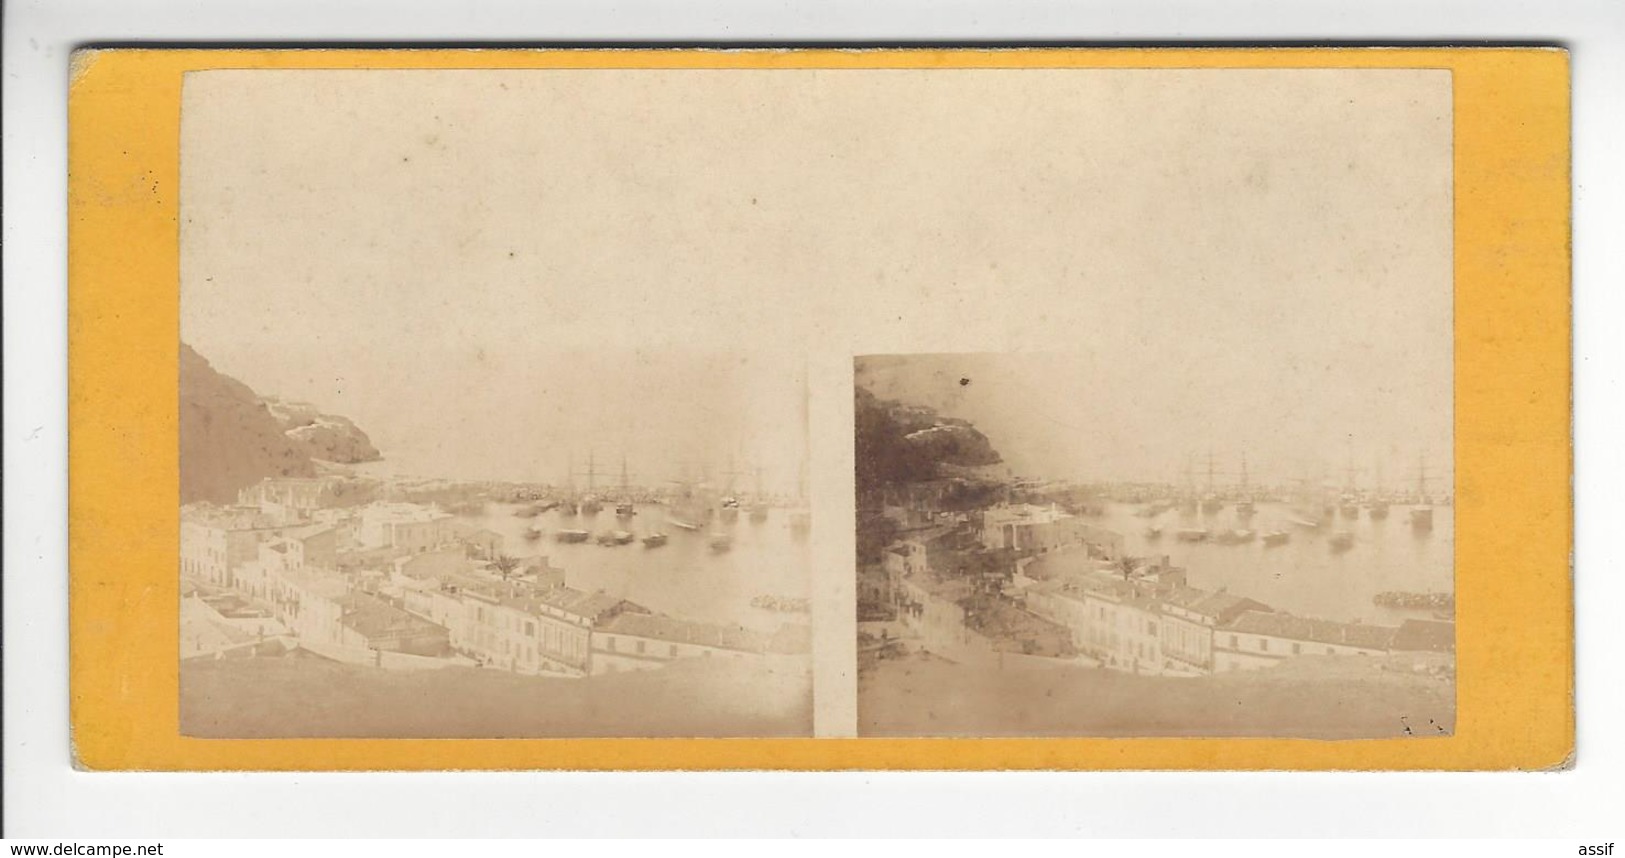 ALGERIE ORAN LE PORT PHOTO STEREO CIRCA 1870 /FREE SHIPPING REGISTERED - Stereoscopio